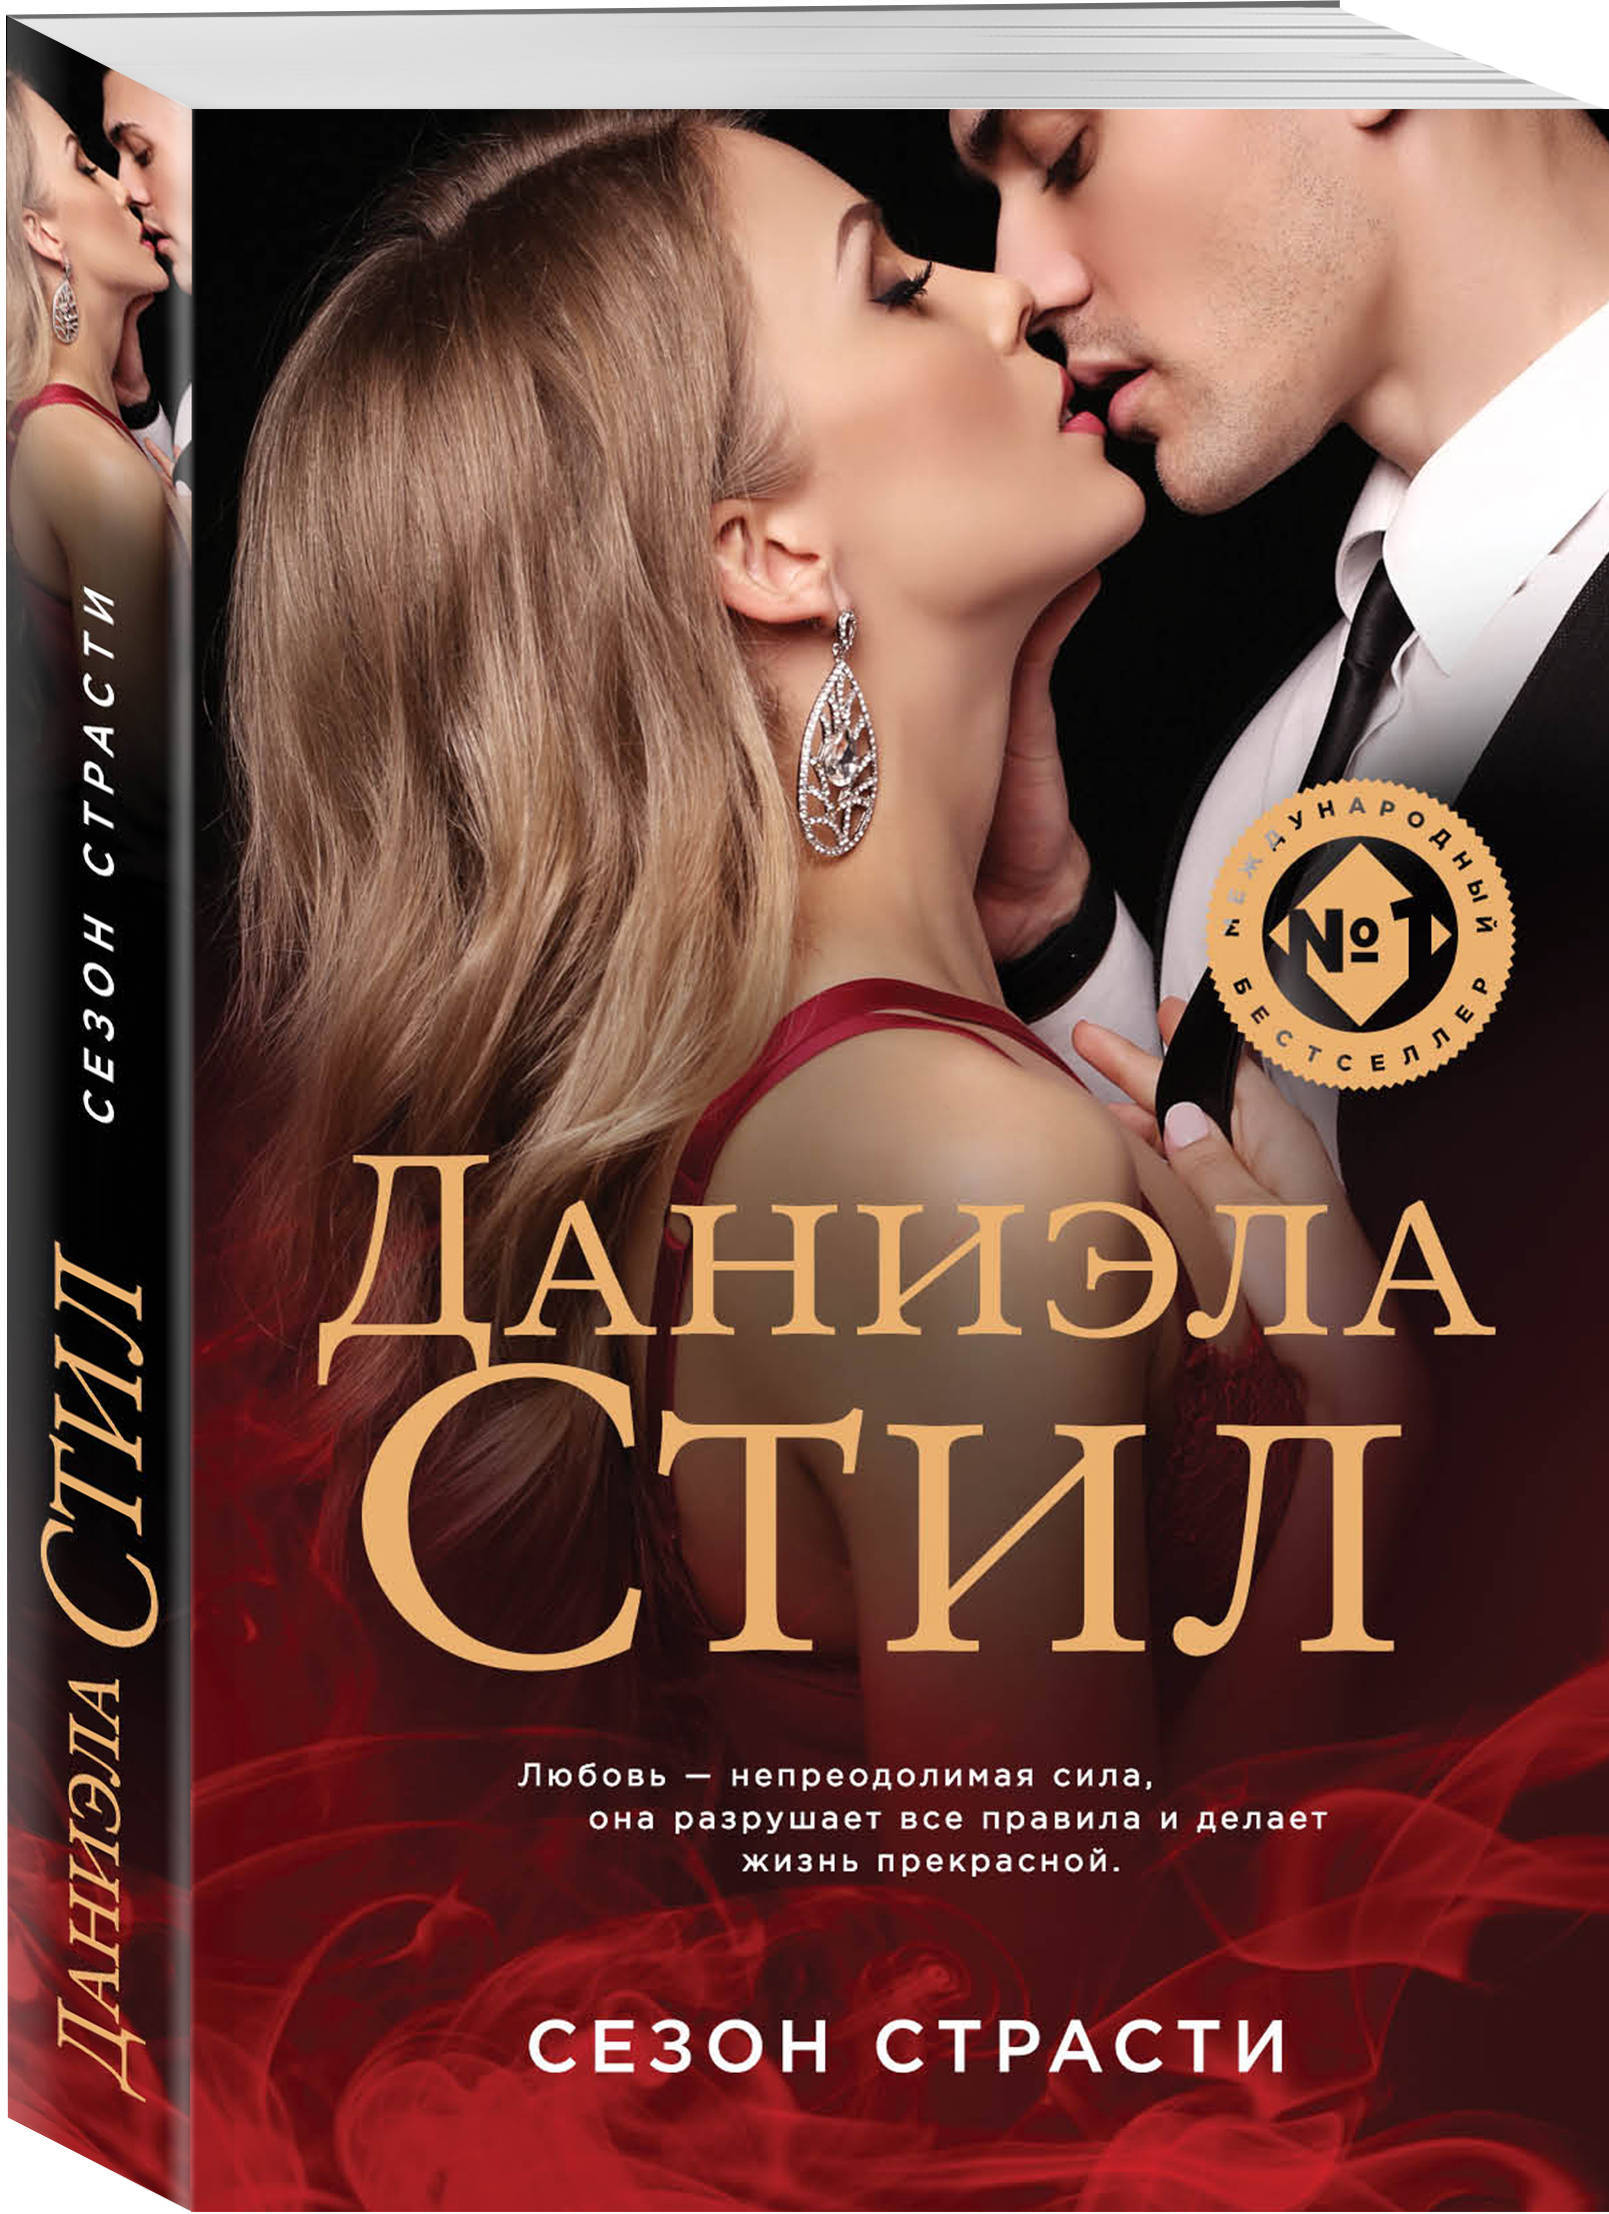 Читать романы о любви современных российских. Любовные романы Даниэлы стил. Книги про любовь современные.